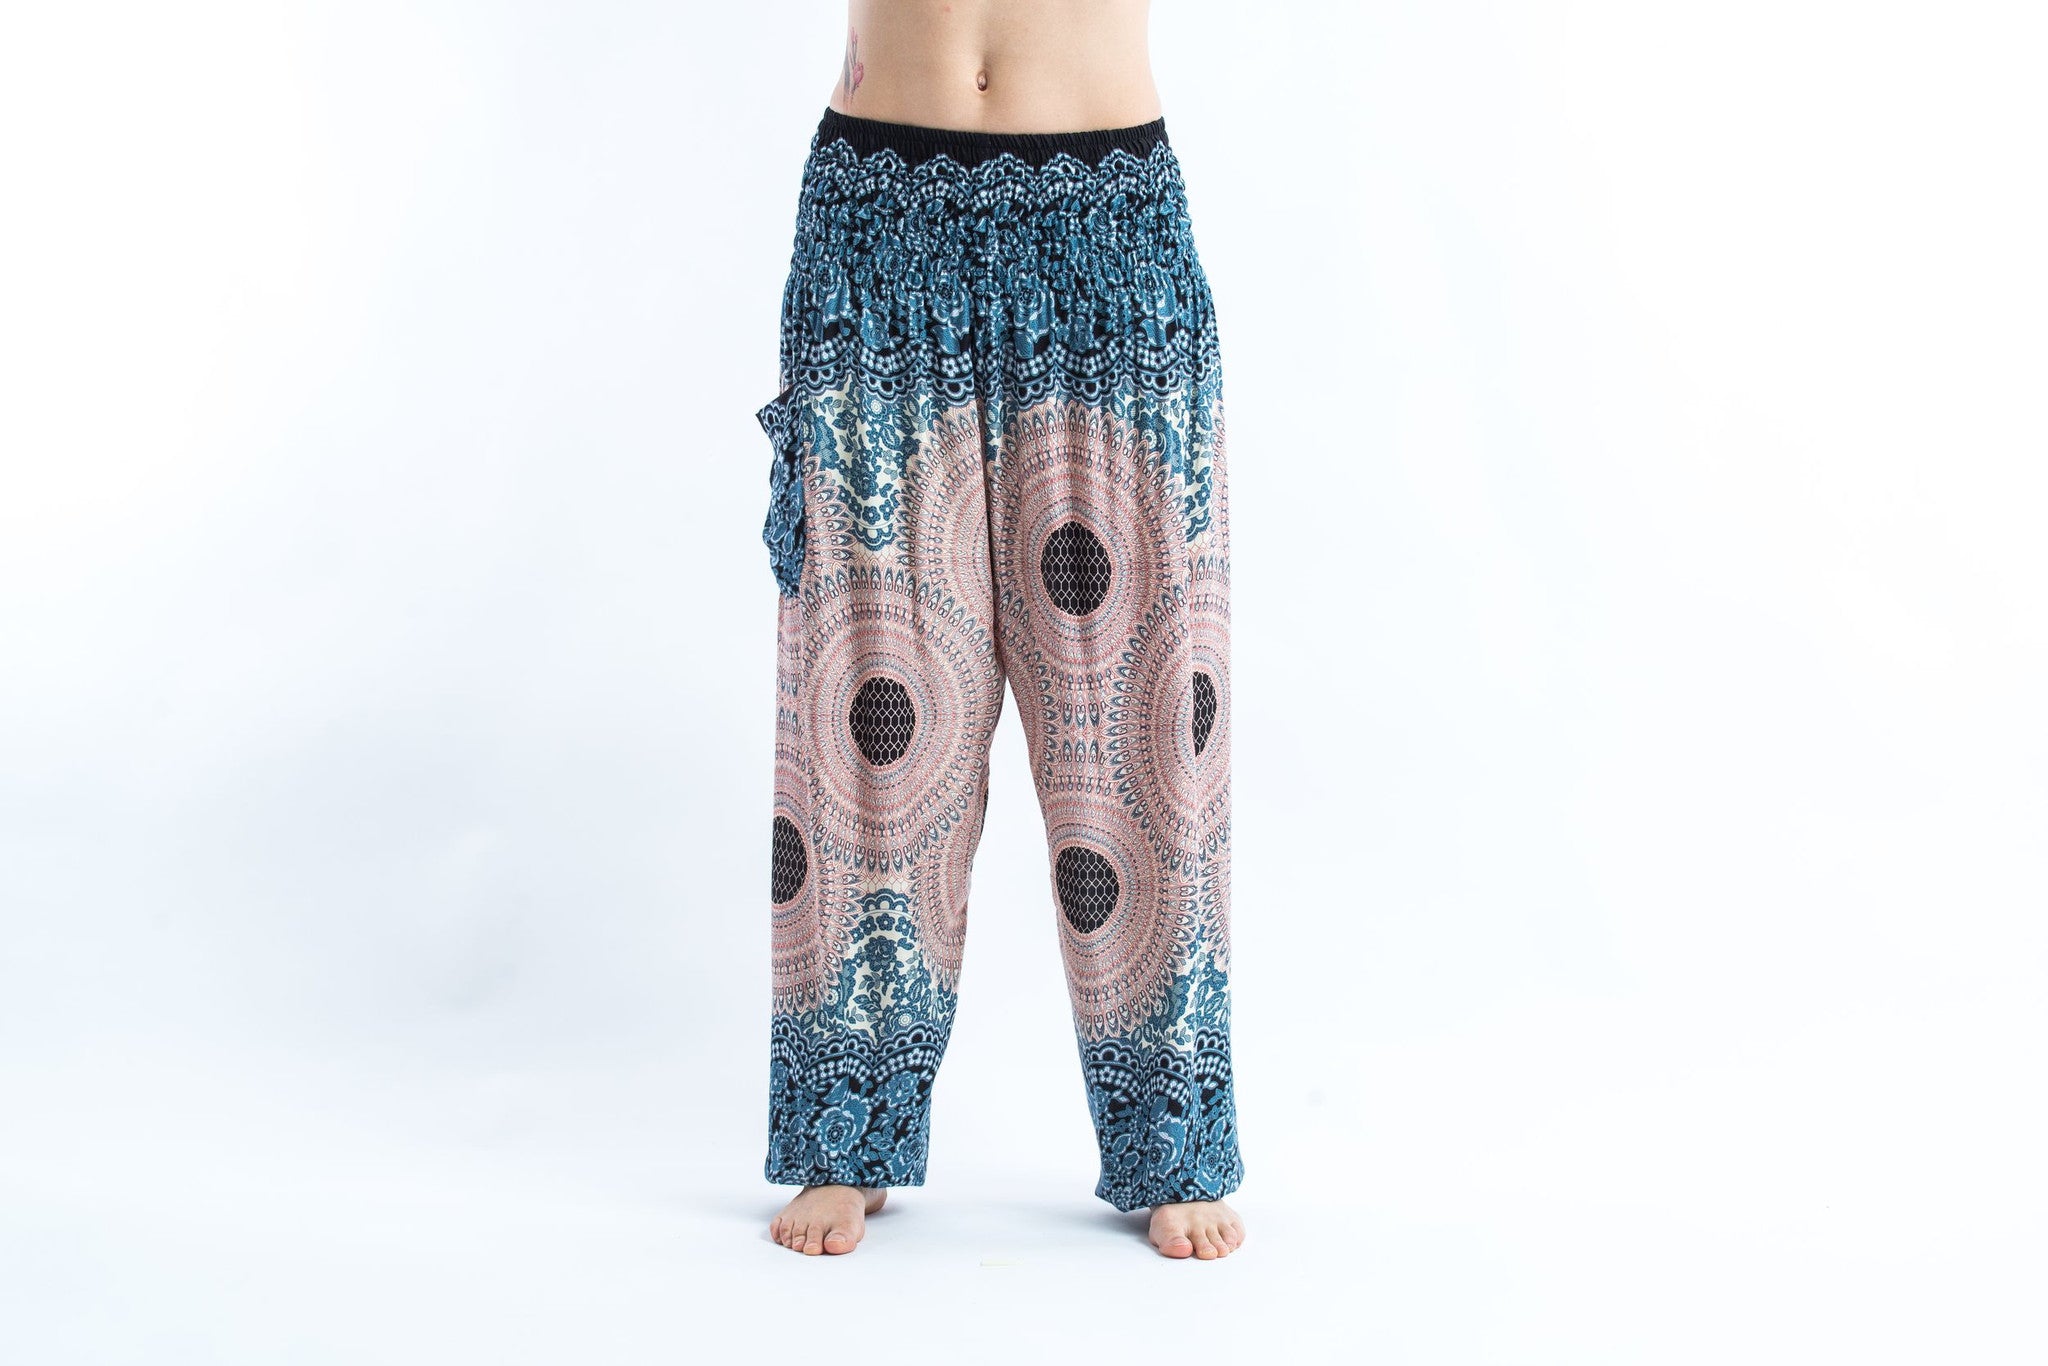 Pantalones bombachos harem🌈 con mandalas para yoga ֎mandalaweb